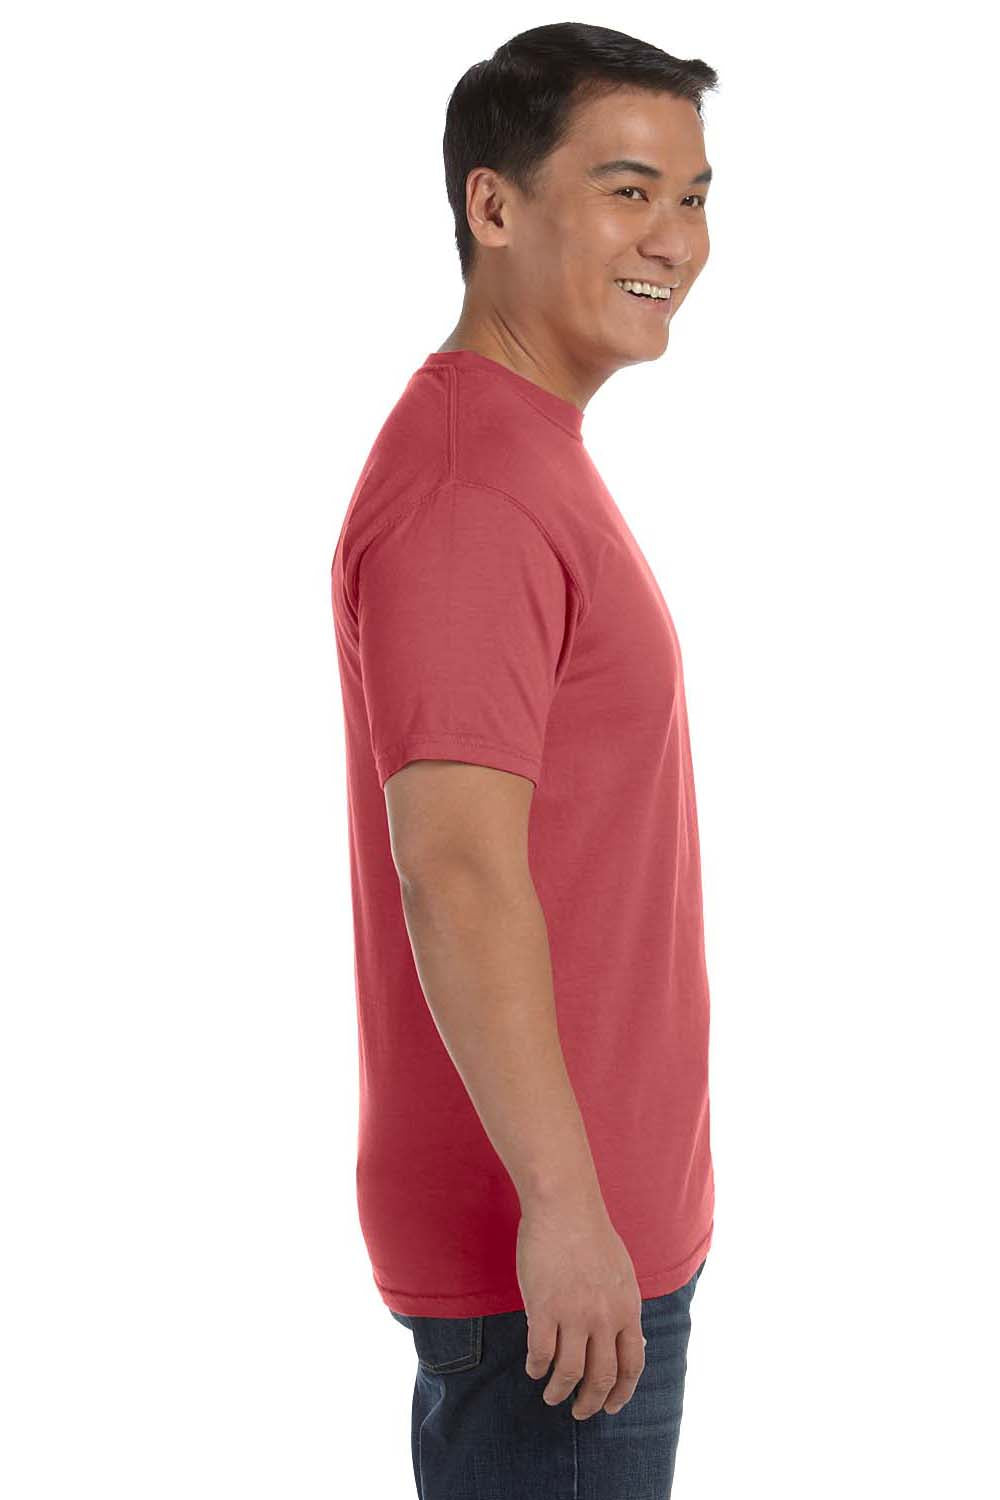 Comfort Colors Mens Short Sleeve Crewneck T-Shirt - Pepper Grey